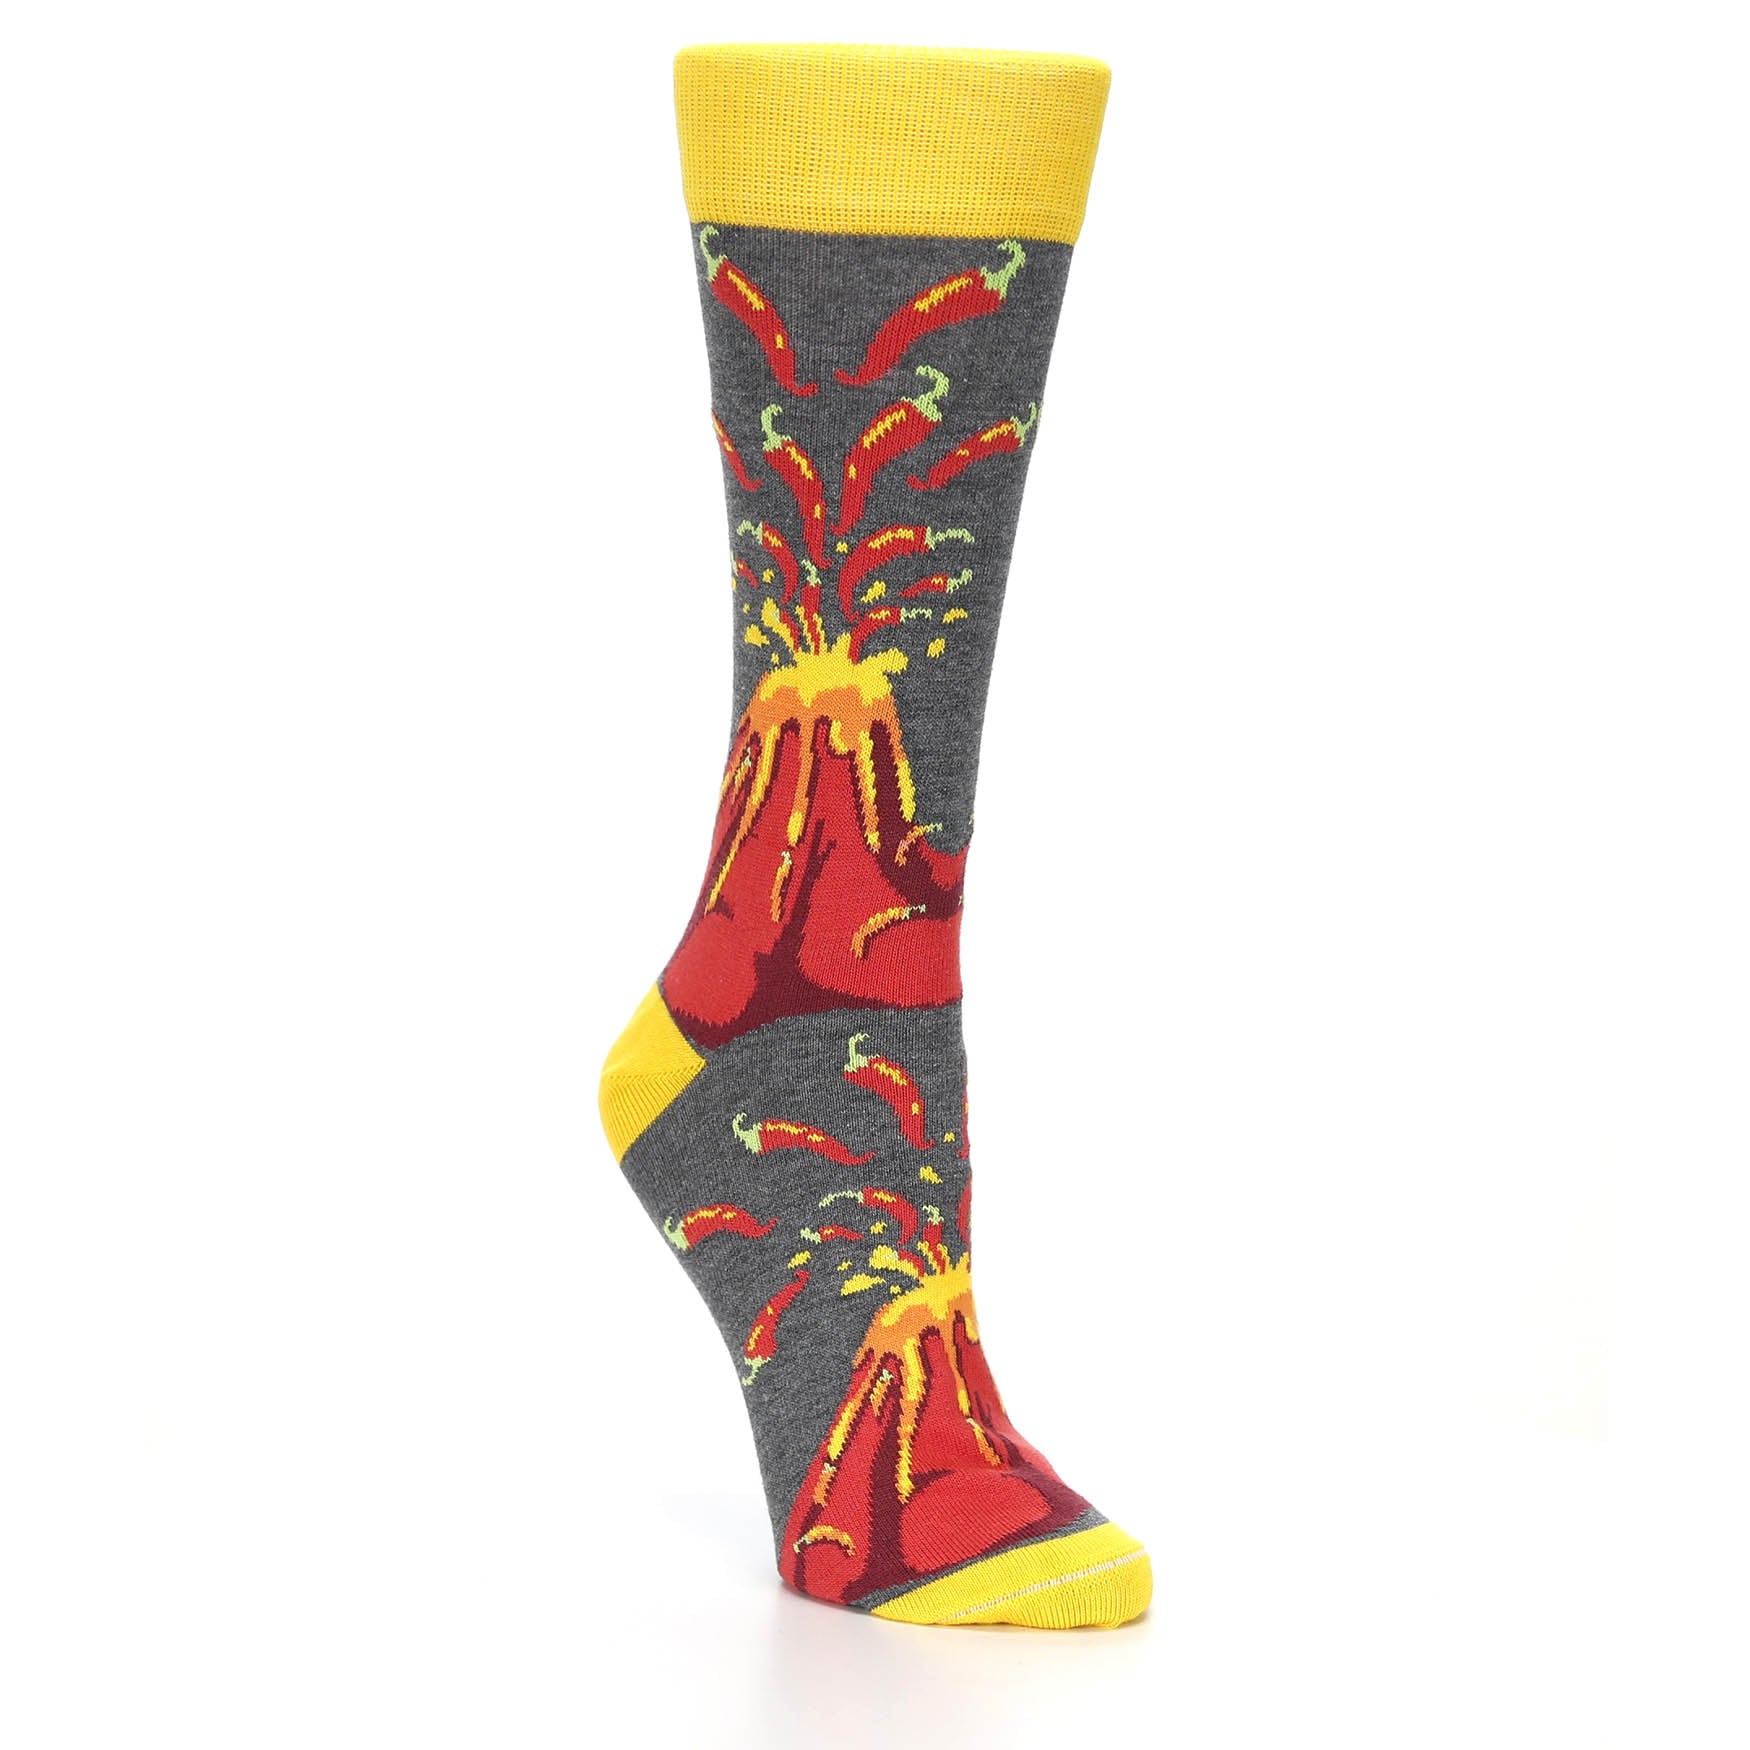 Volcano Spice Socks - Women's Novelty Dress Socks